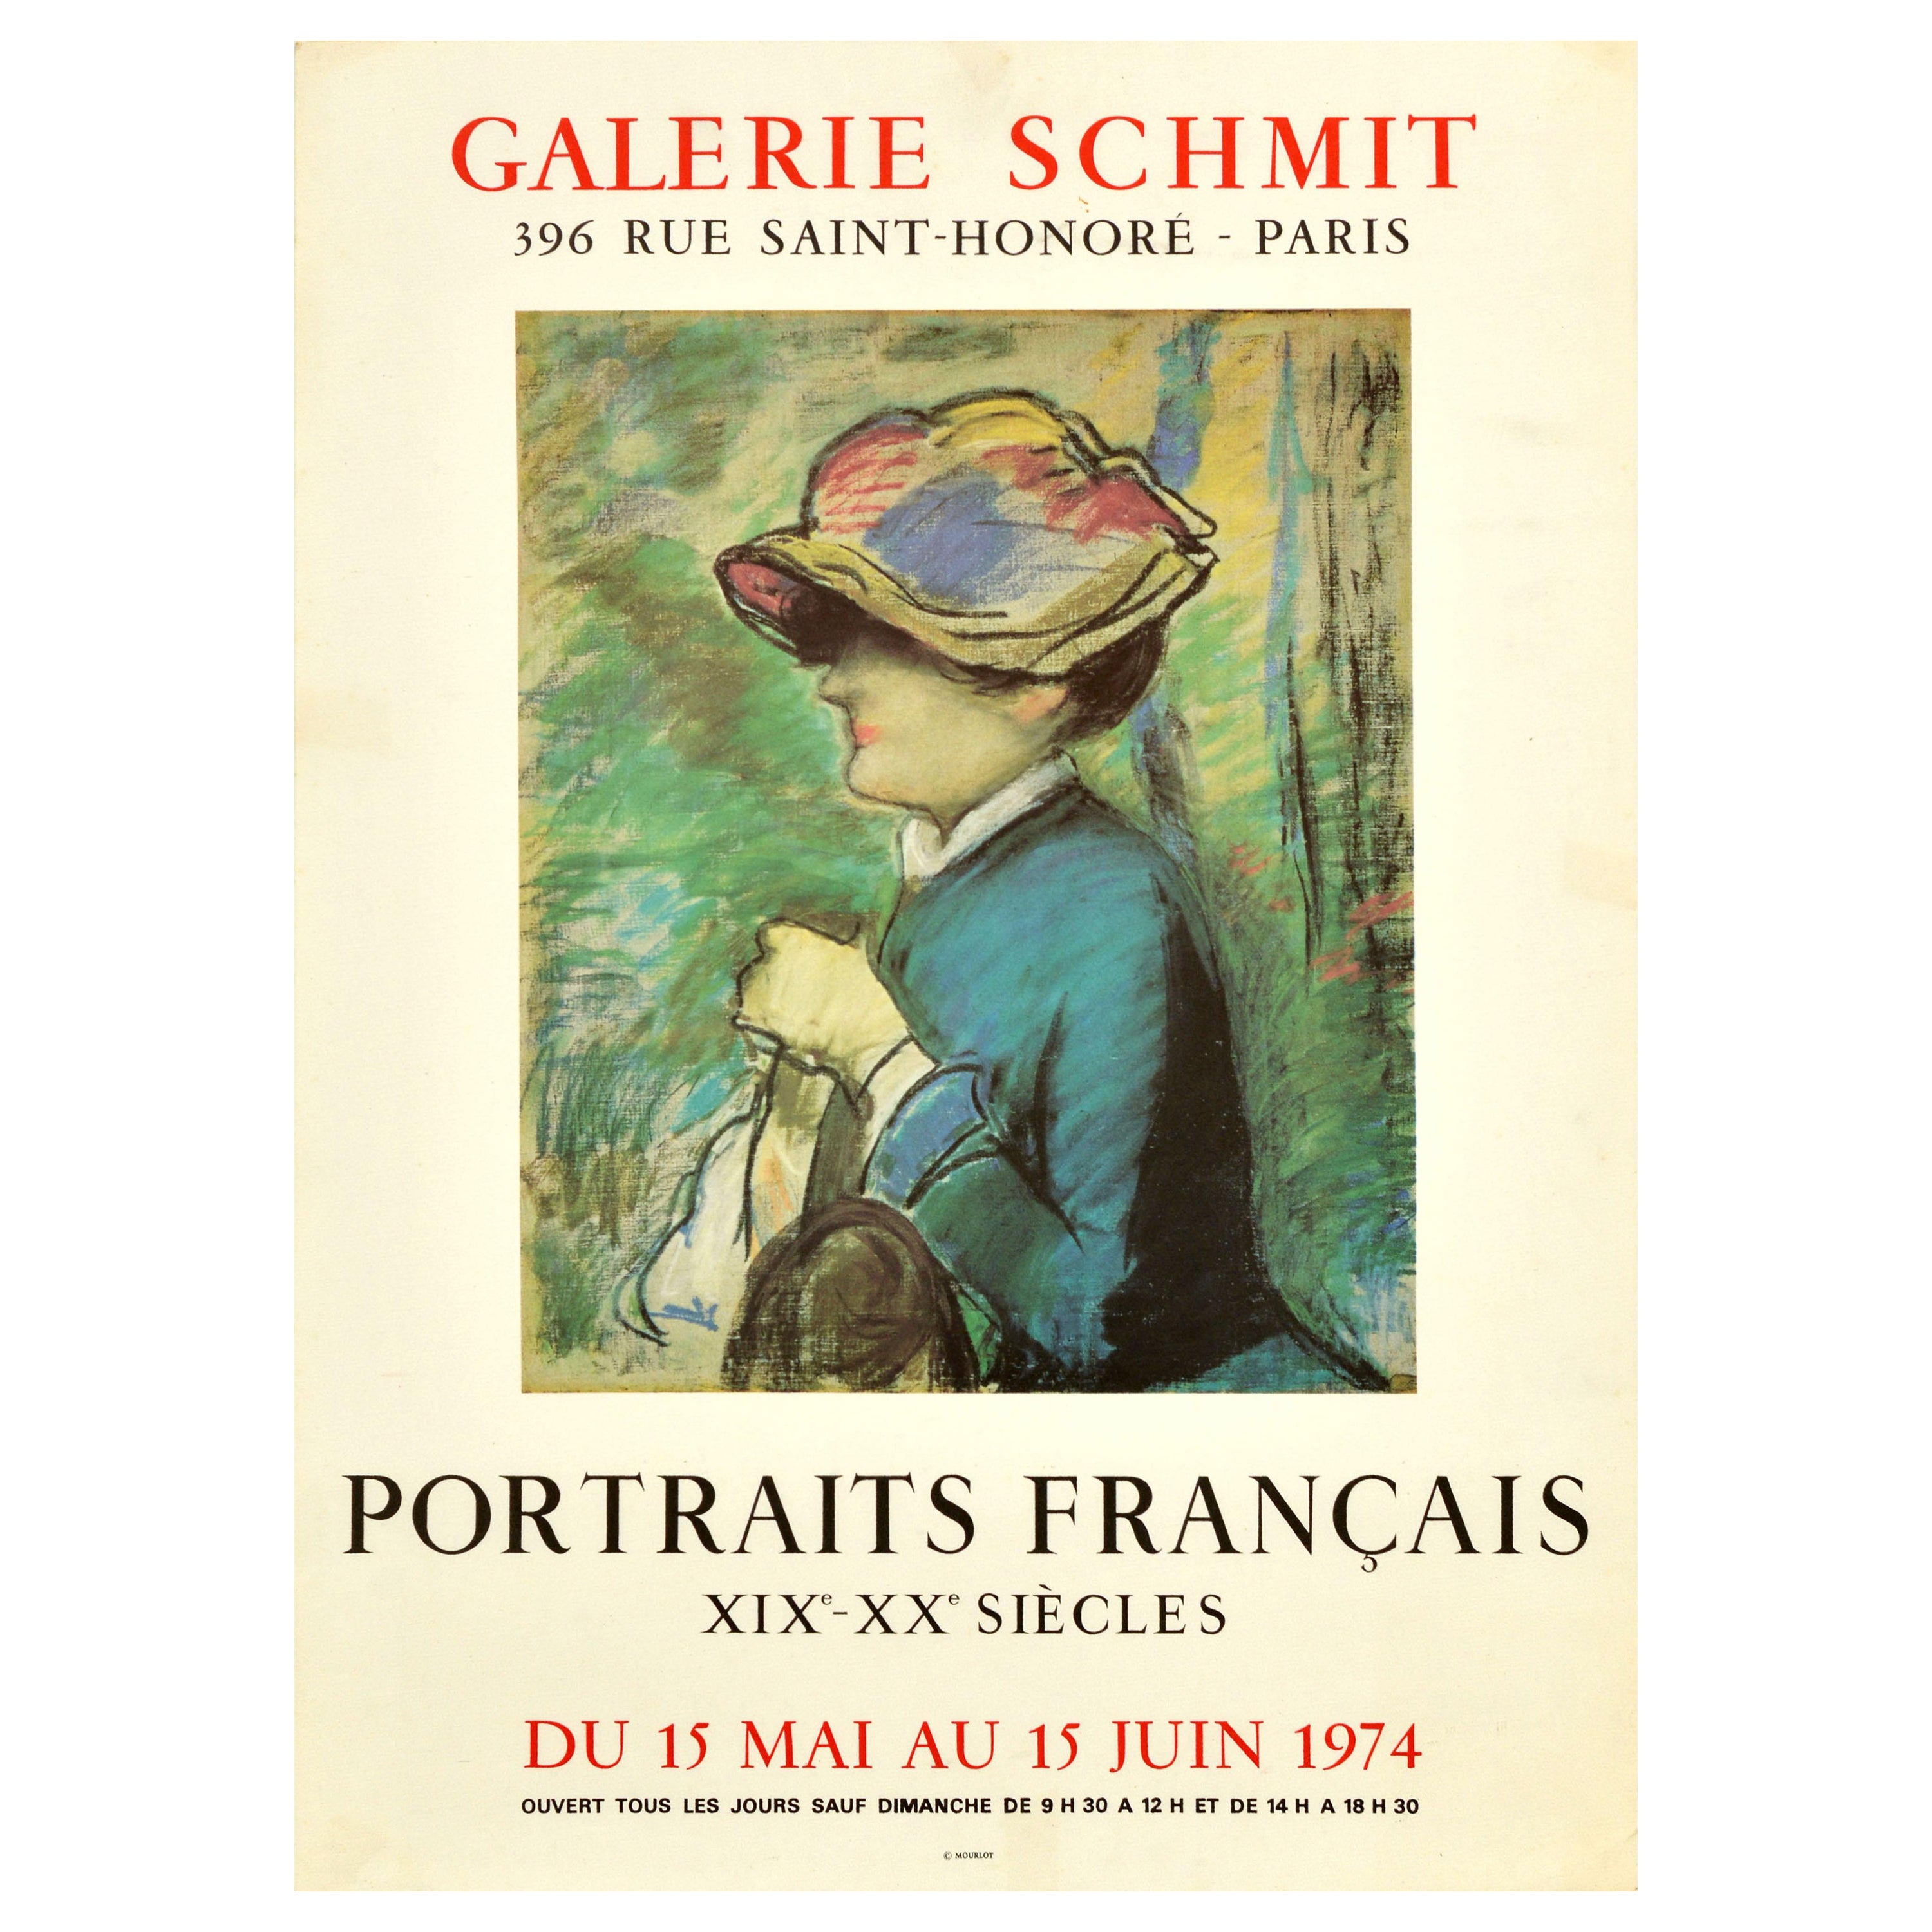 Original Vintage Art Exhibition Poster Portraits Francais Galerie Schmit Manet For Sale